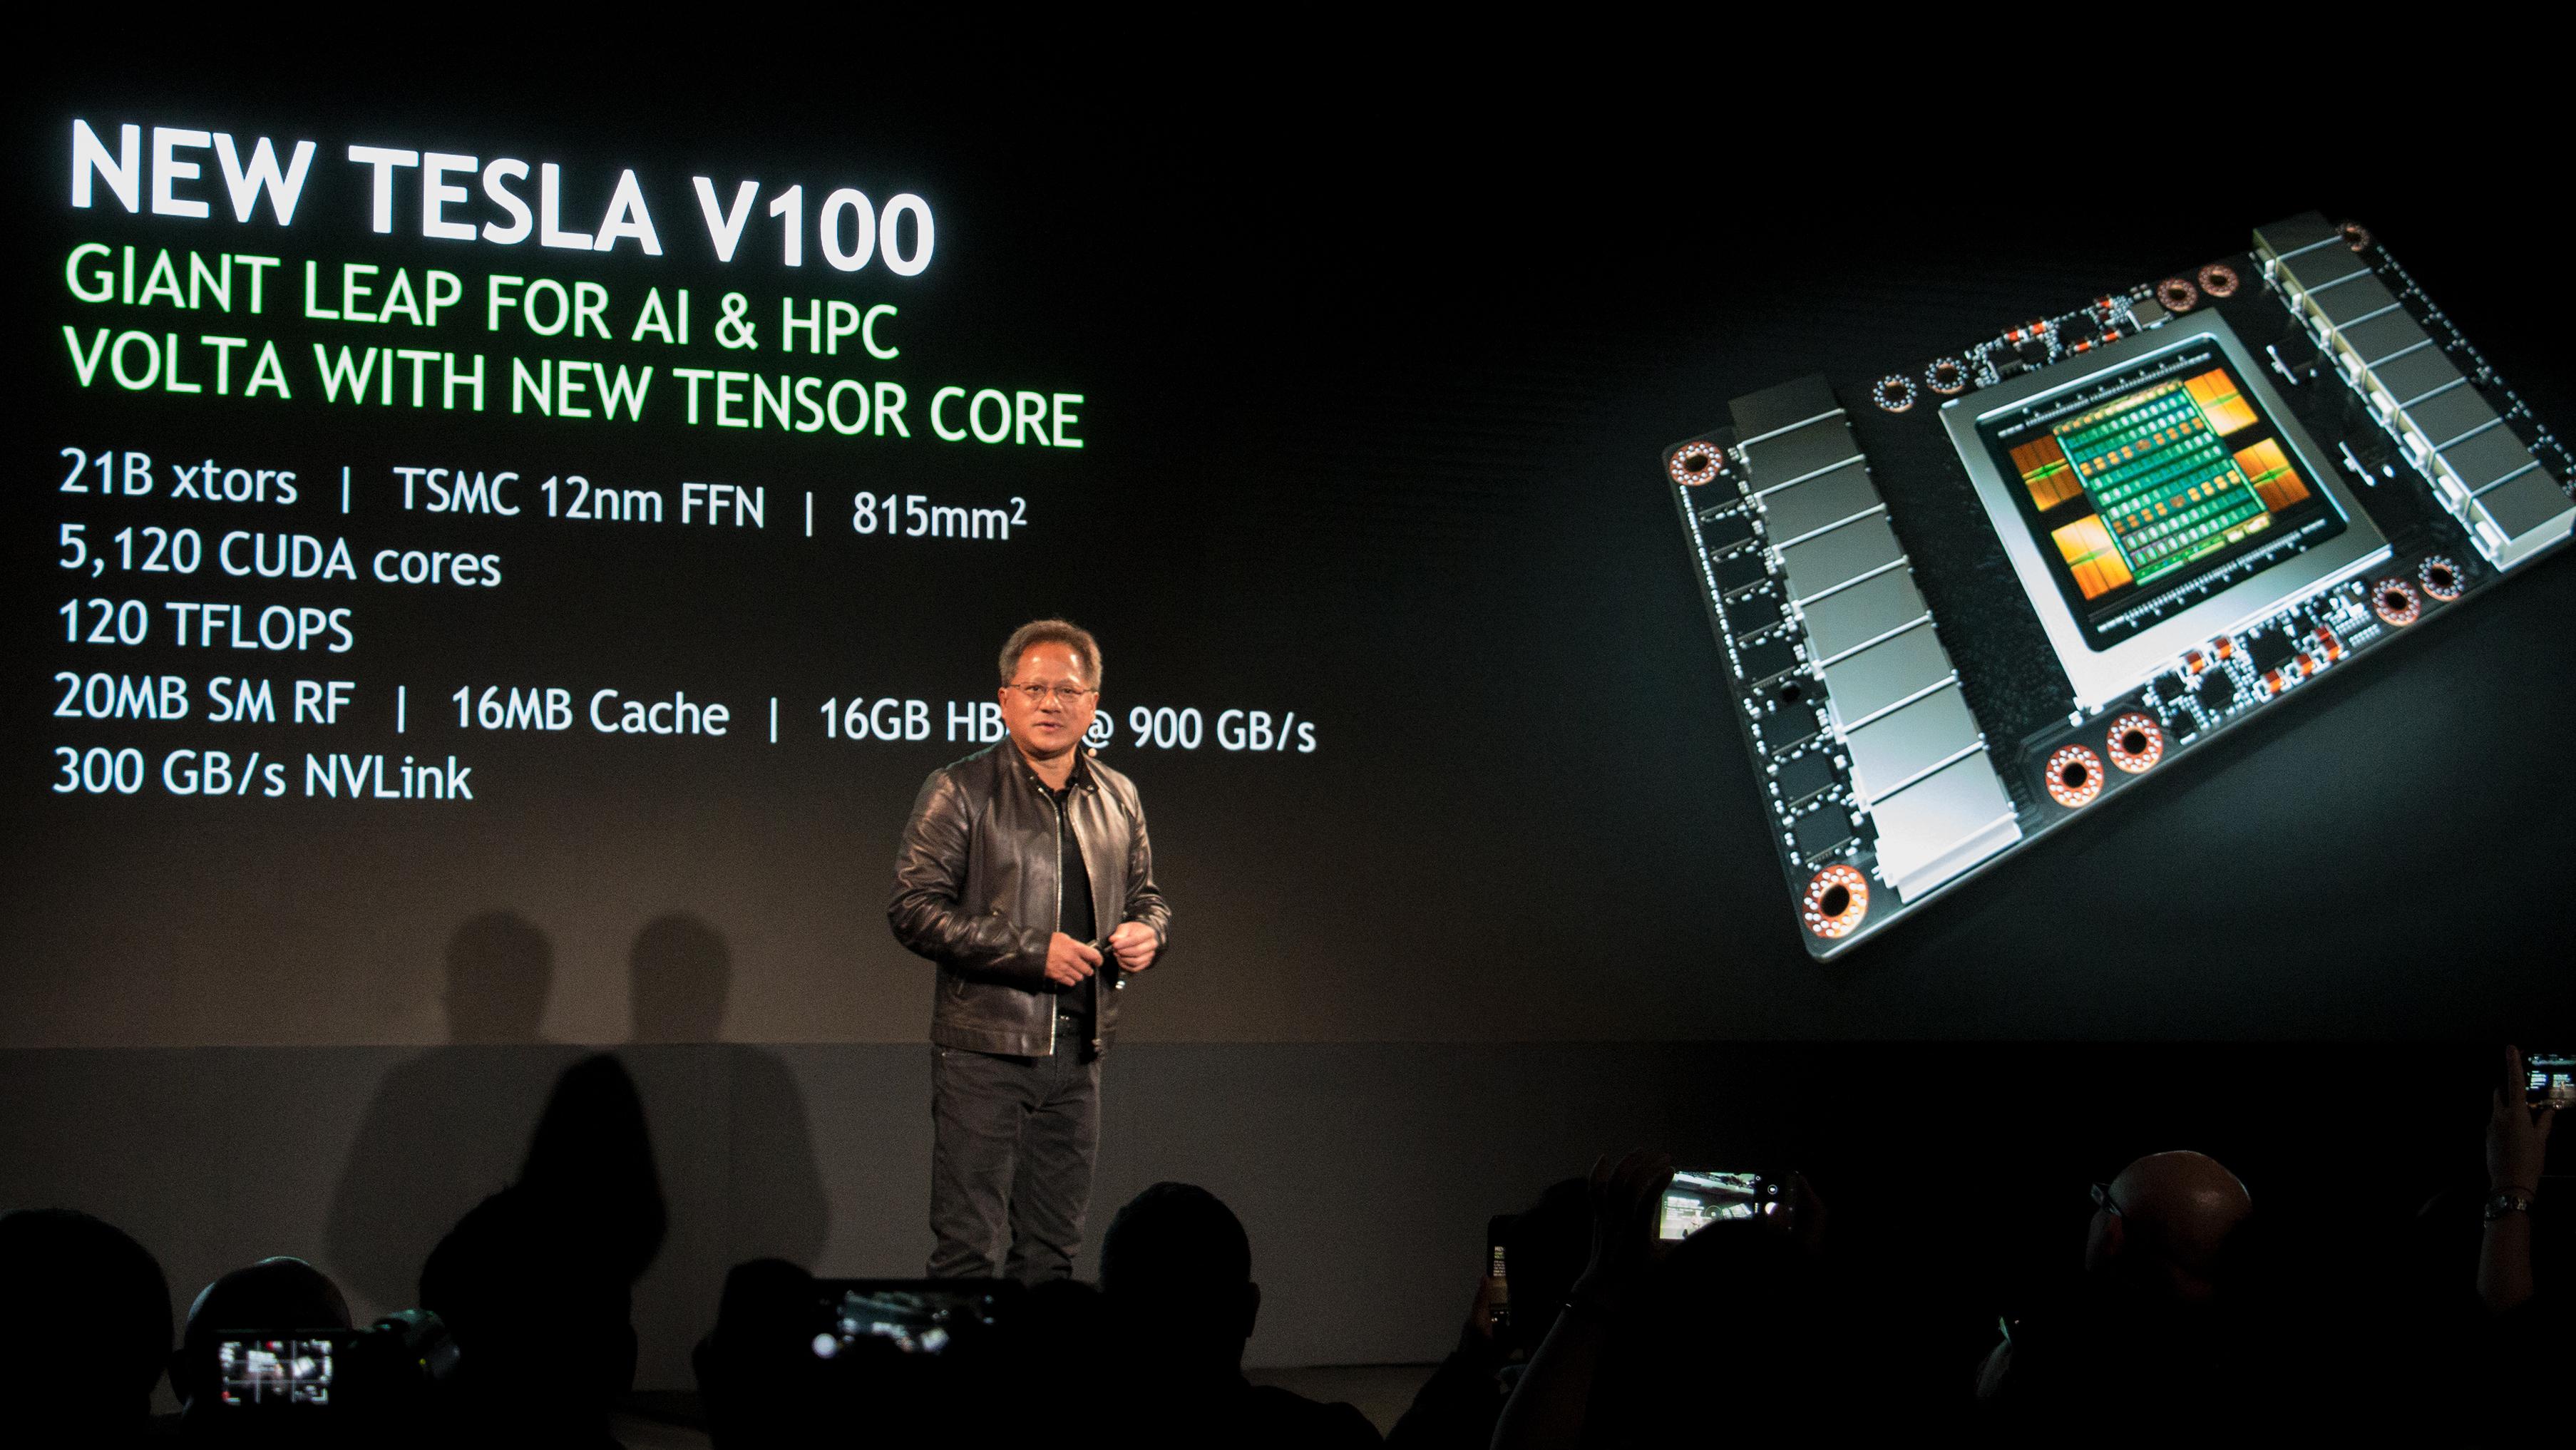 Tesla V100-regnekortet har plass til 21,1 milliarder transistorer fordelt på en gigantisk 815mm2 Volta-brikke. GTX 20-serien får en mye mindre brikke, men med et høyere antall transistorer enn dagens GTX 10-serie.